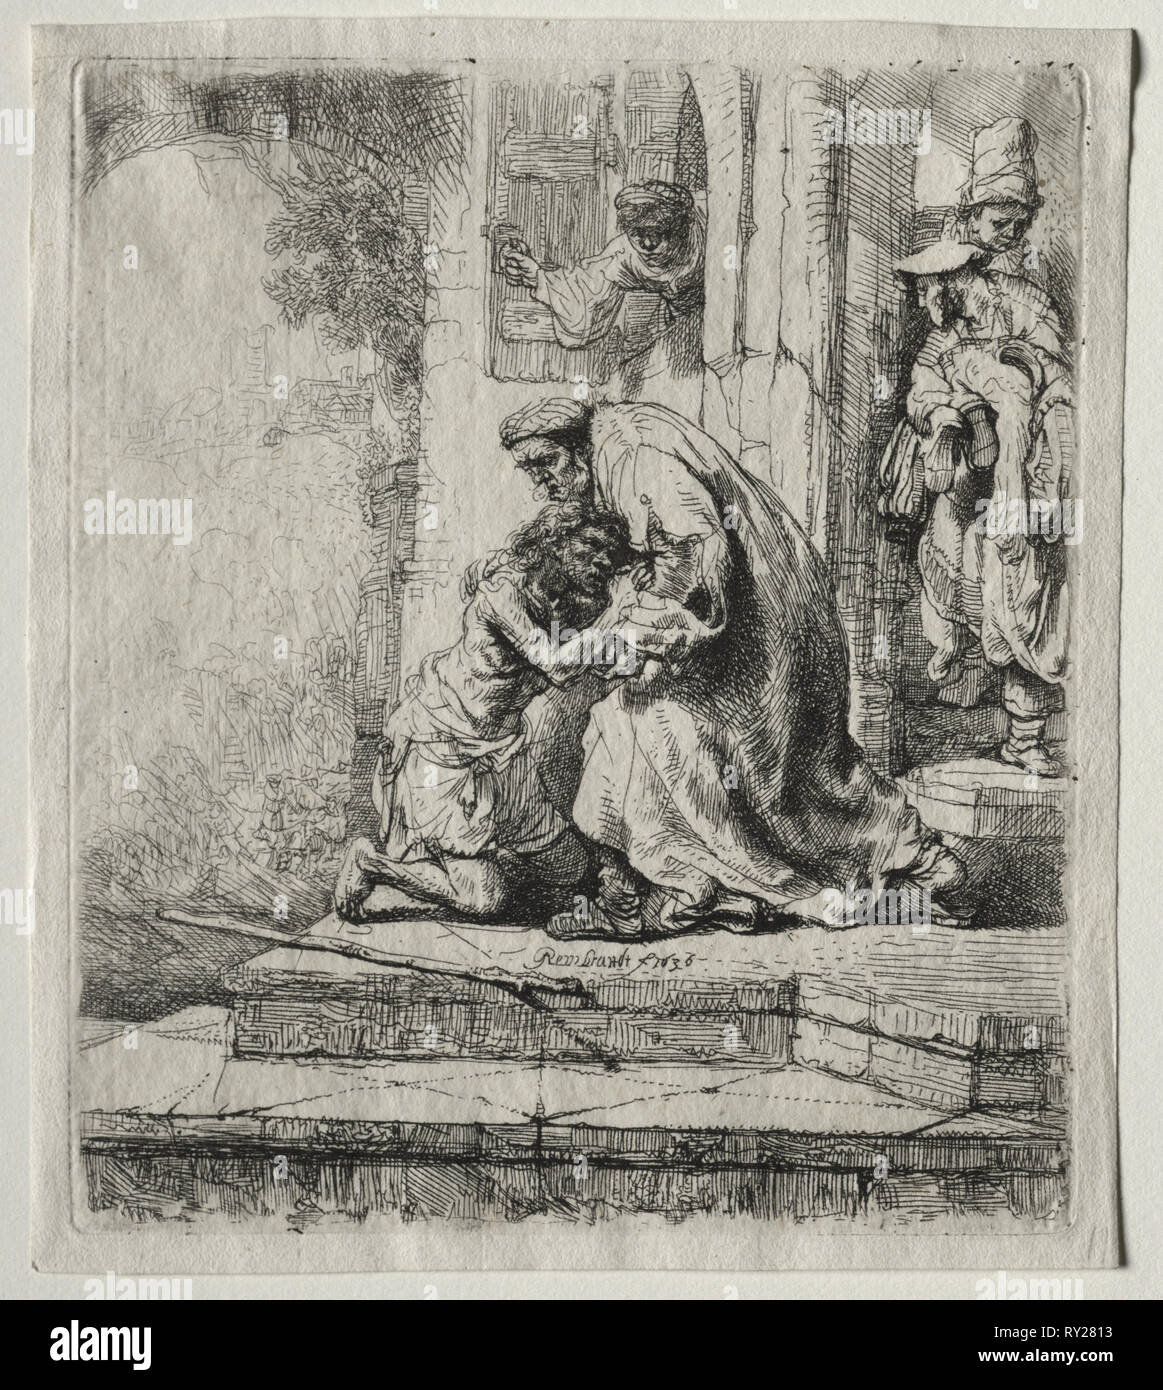 Rückkehr des verlorenen Sohnes, 1636. Rembrandt van Rijn (Niederländisch, 1606-1669). Ätzen; Blatt: 16,4 x 14,4 cm (6 7/16 x 5 11/16 in.); Plattenrand: 15,5 x 13,3 cm (6 1/8 x 5 1/4 in Stockfoto